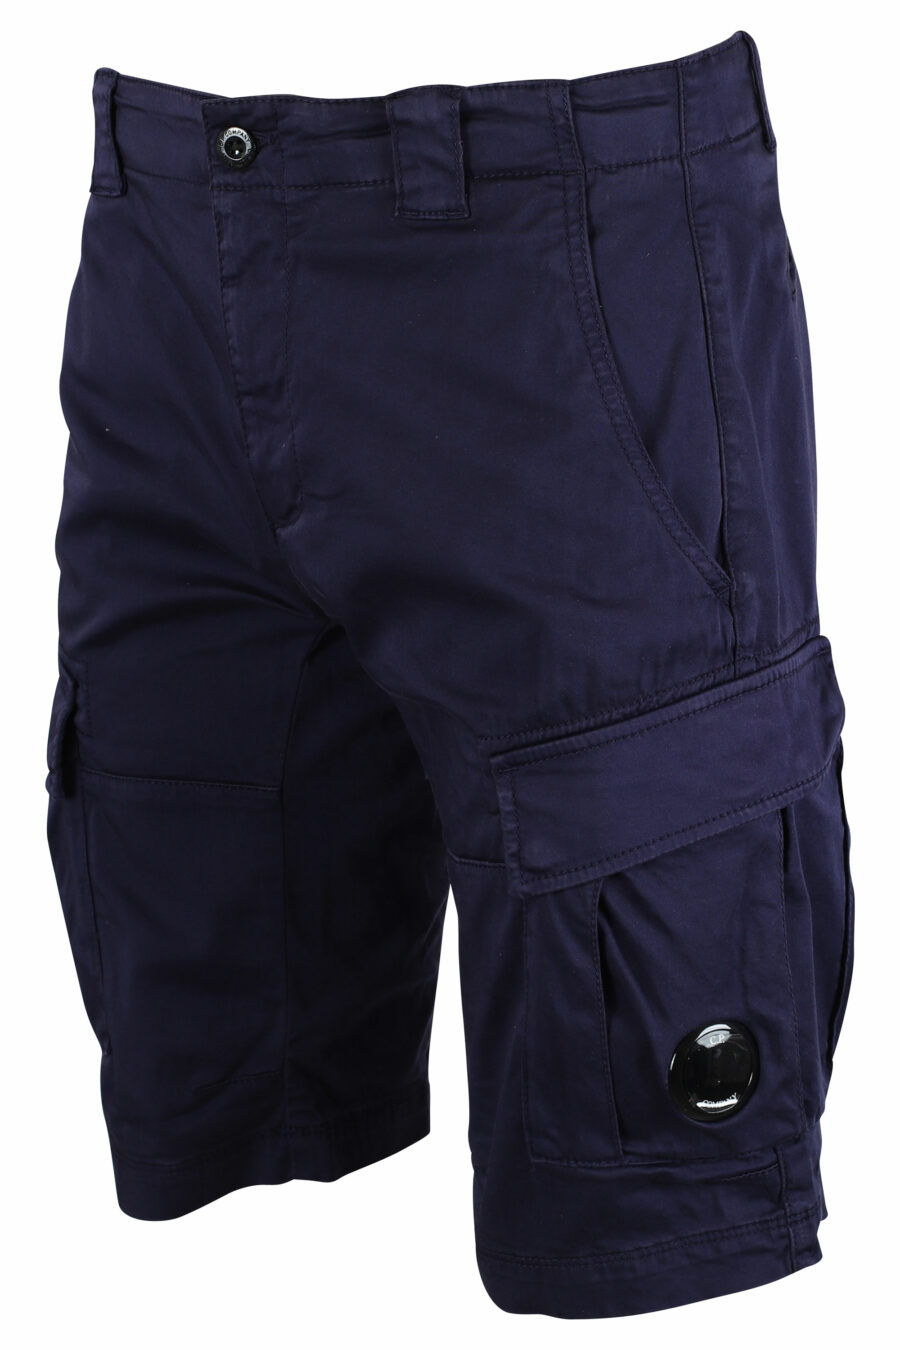 Pantalón corto azul oscuro estilo cargo con minilogo circular - IMG 9490